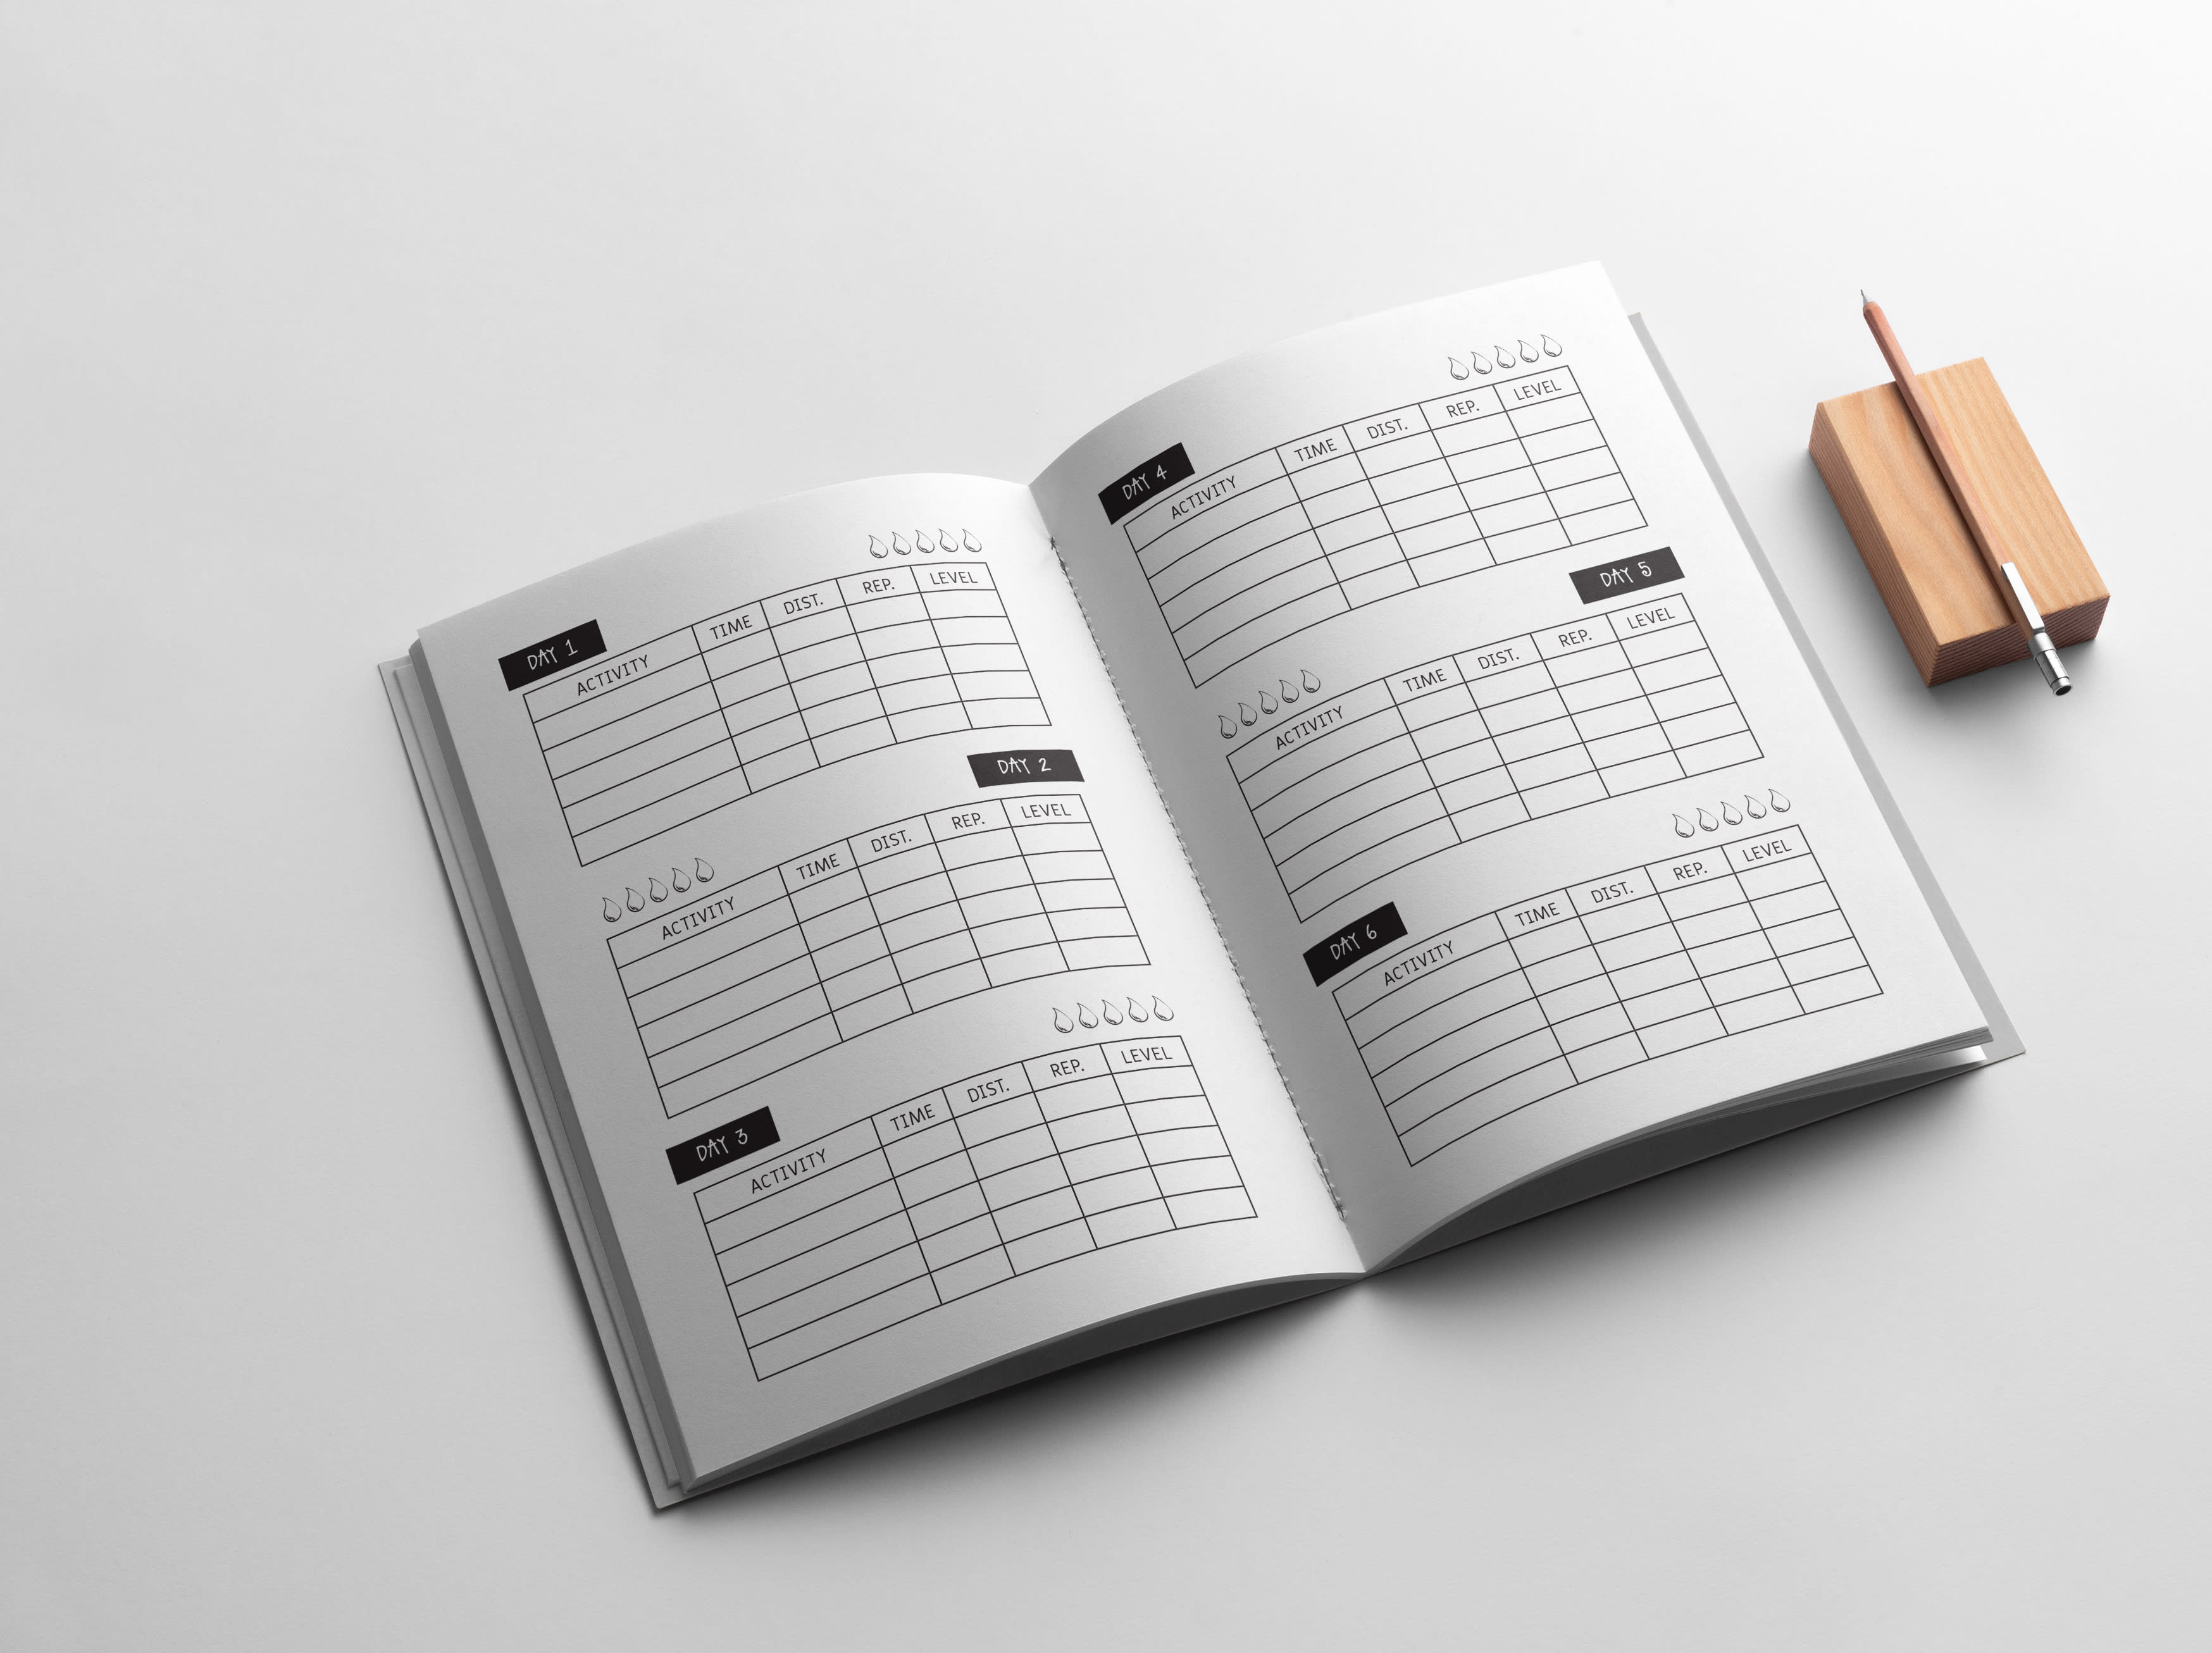 Créez un journal, carnet ou agenda personnalisé